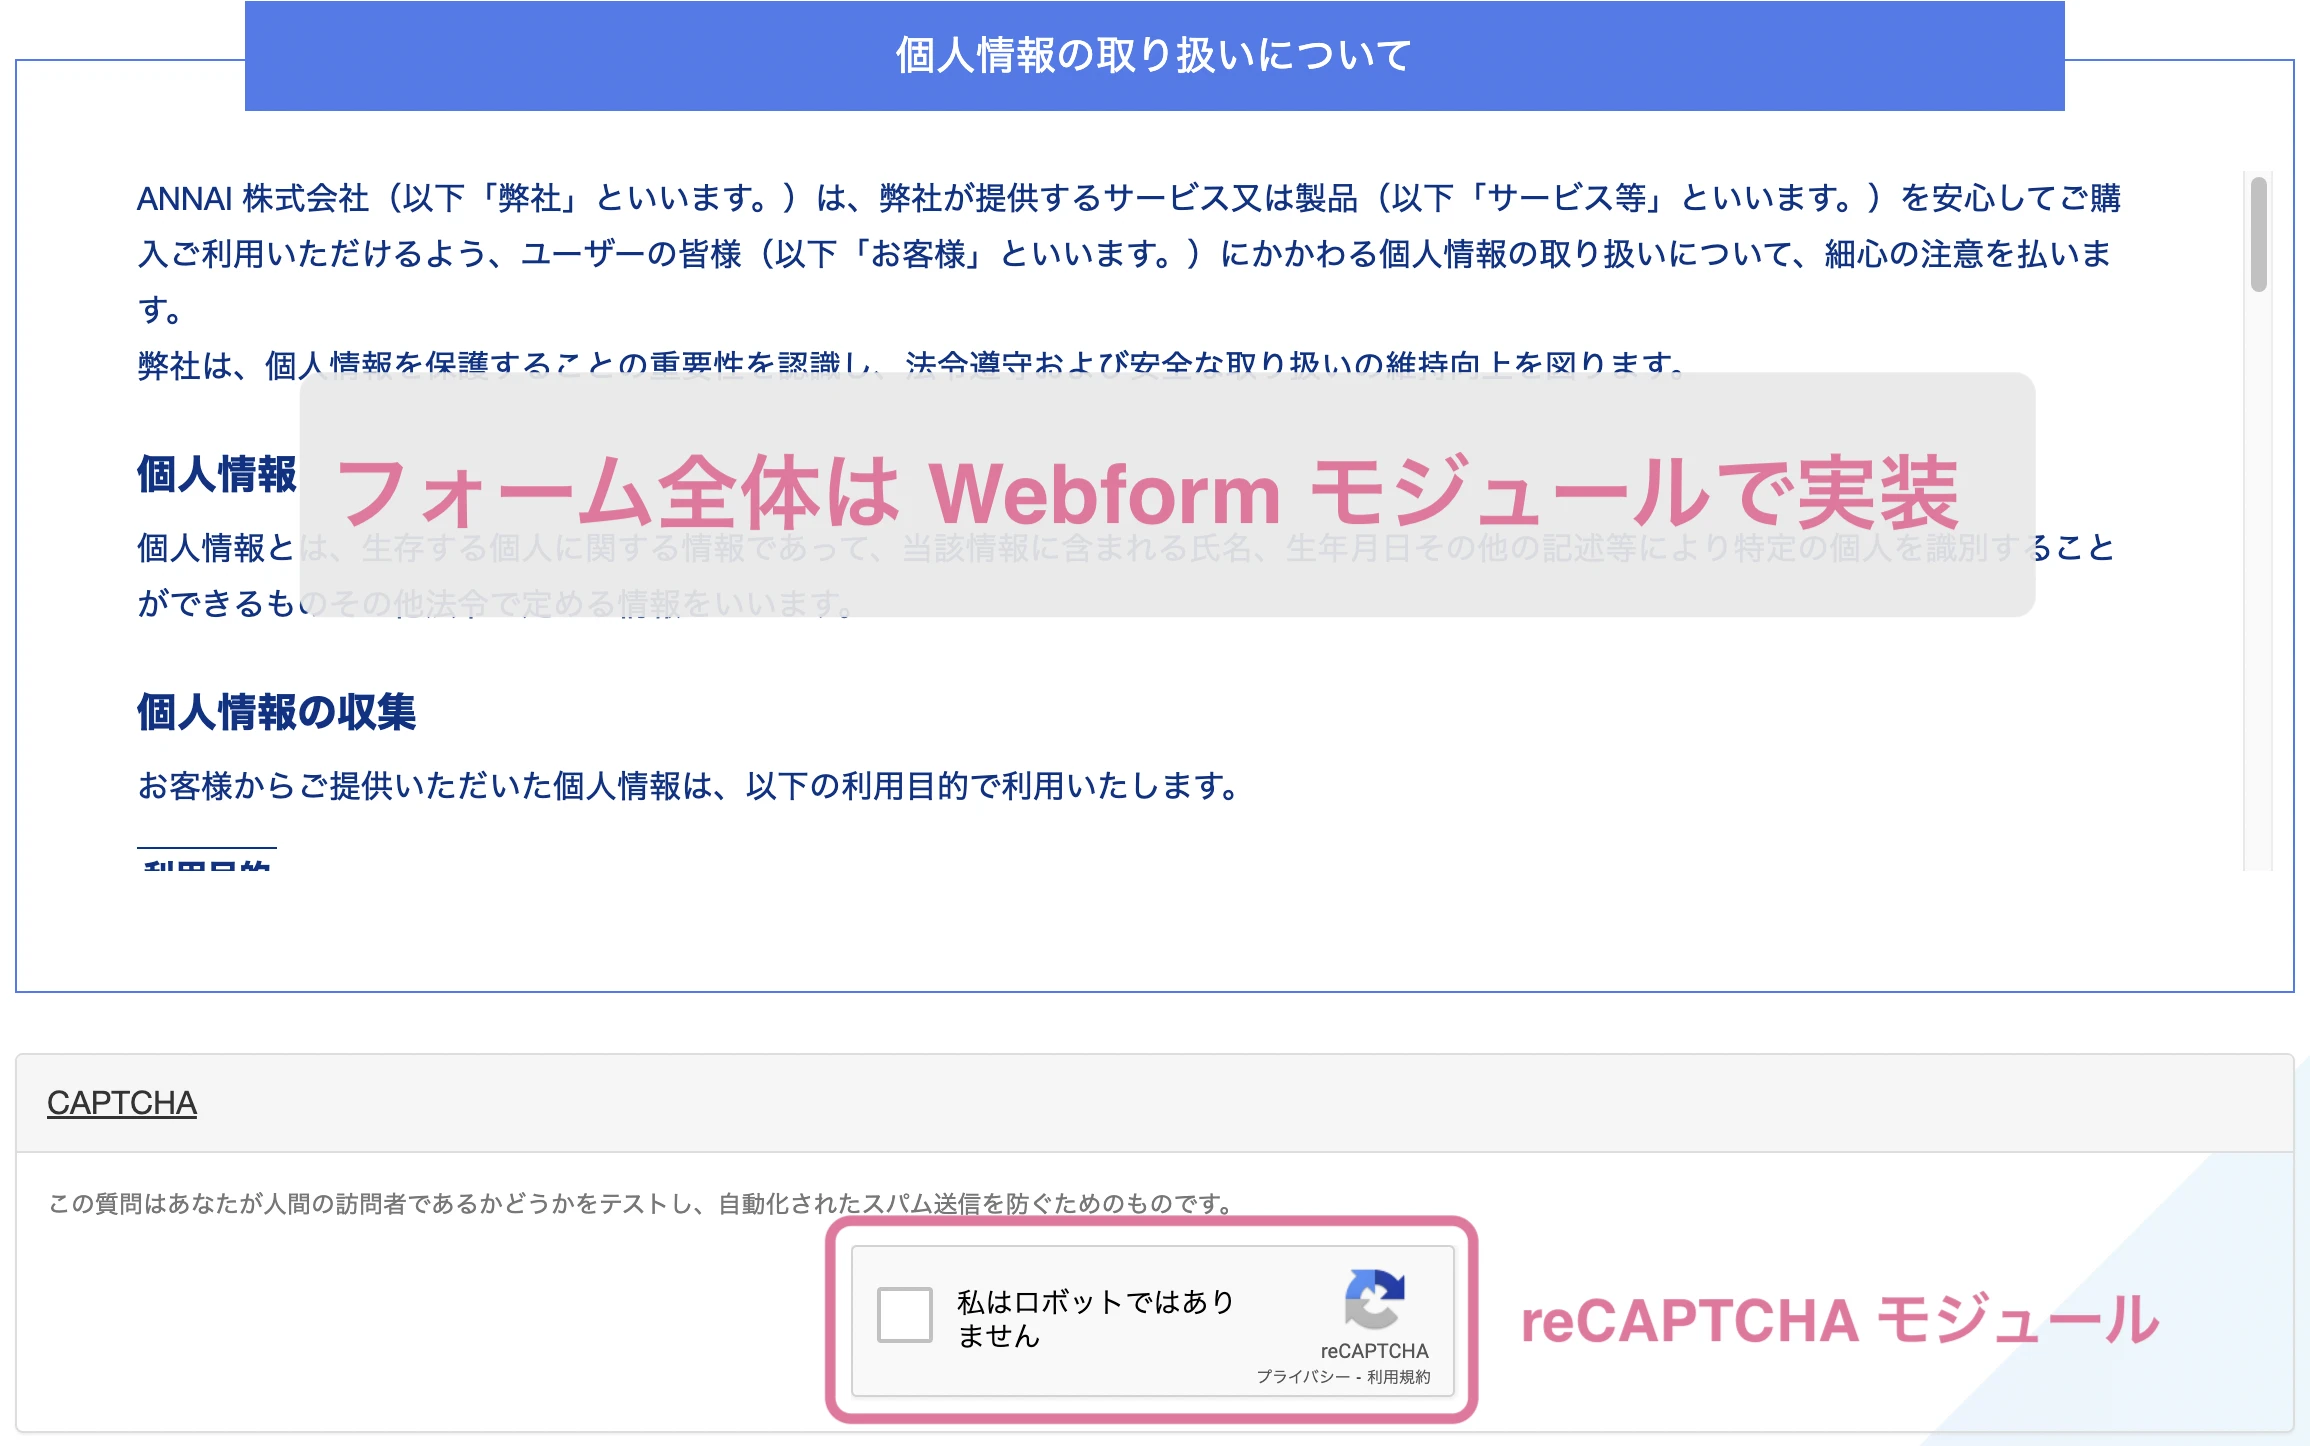 モジュール同士の組み合わせで機能を実装した例：webformにreCapthaを導入